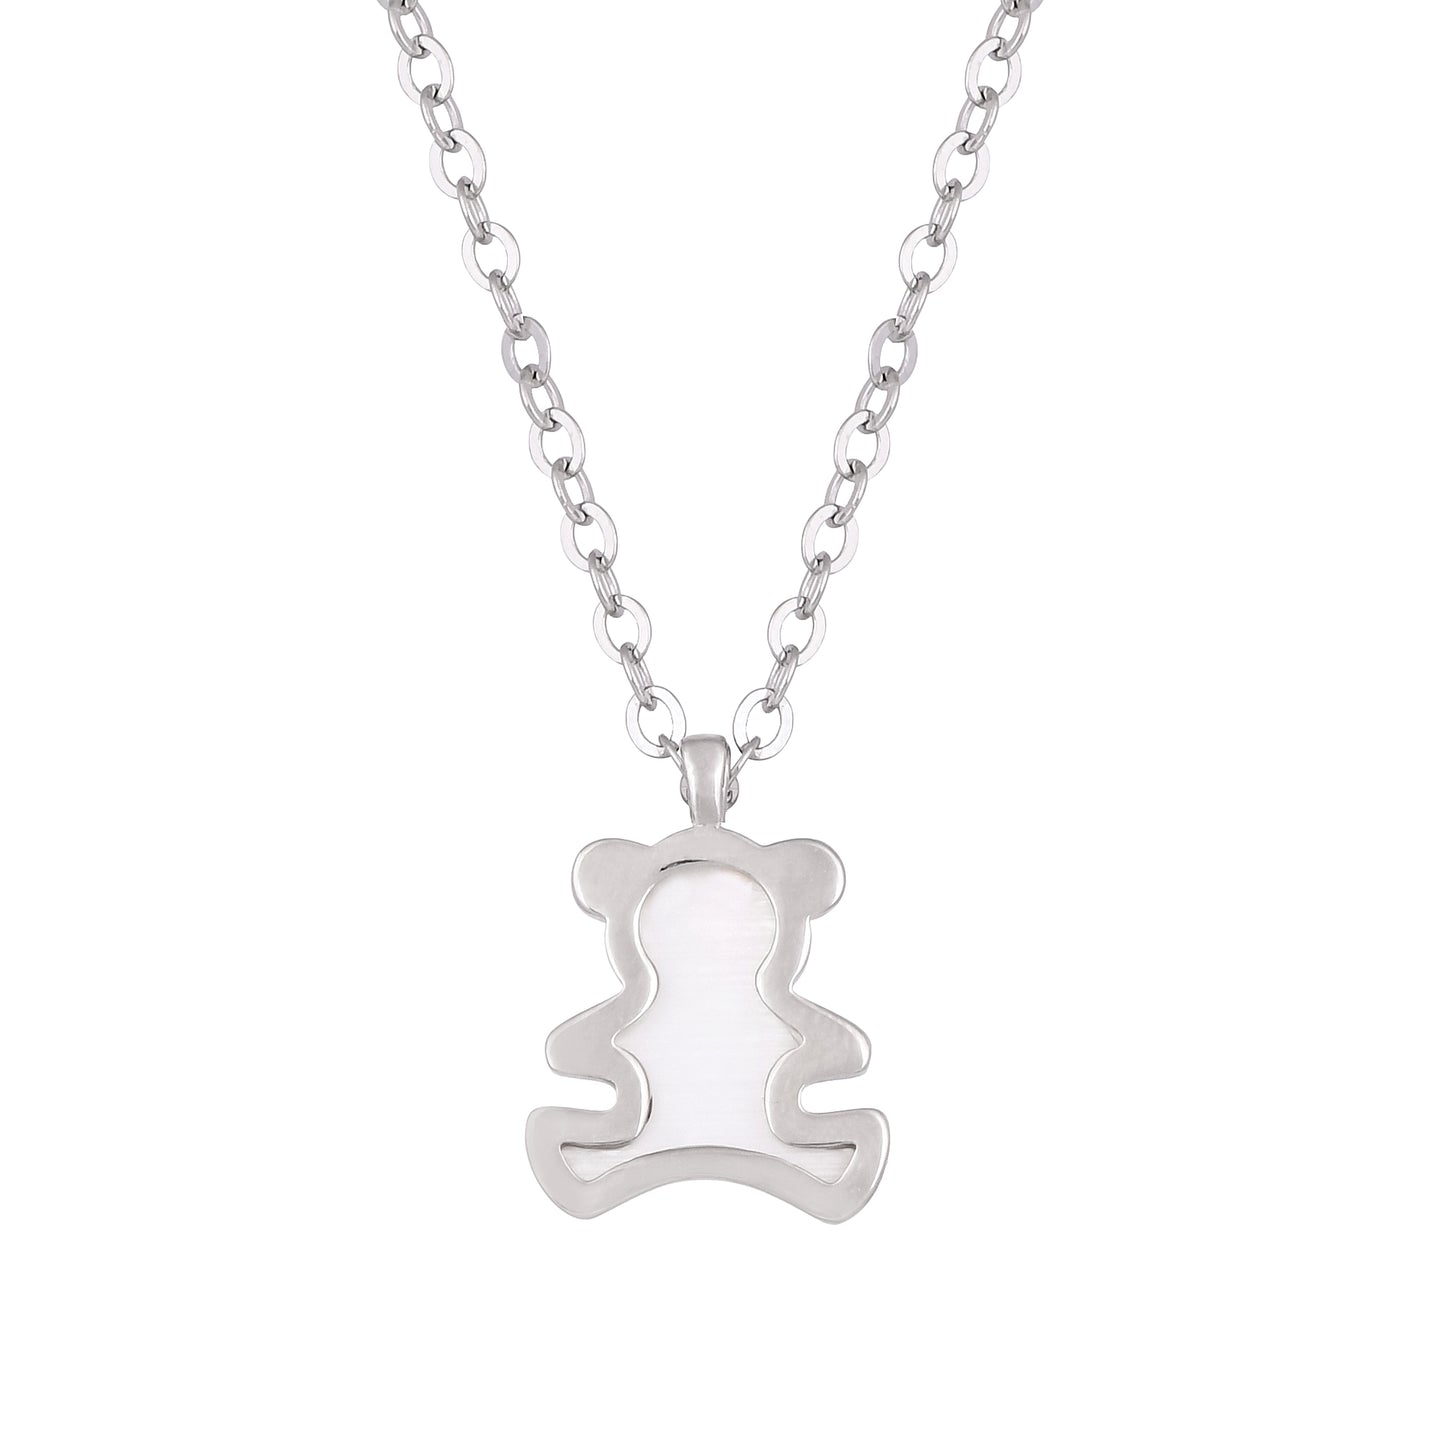 Silver Adorable Panda Necklace